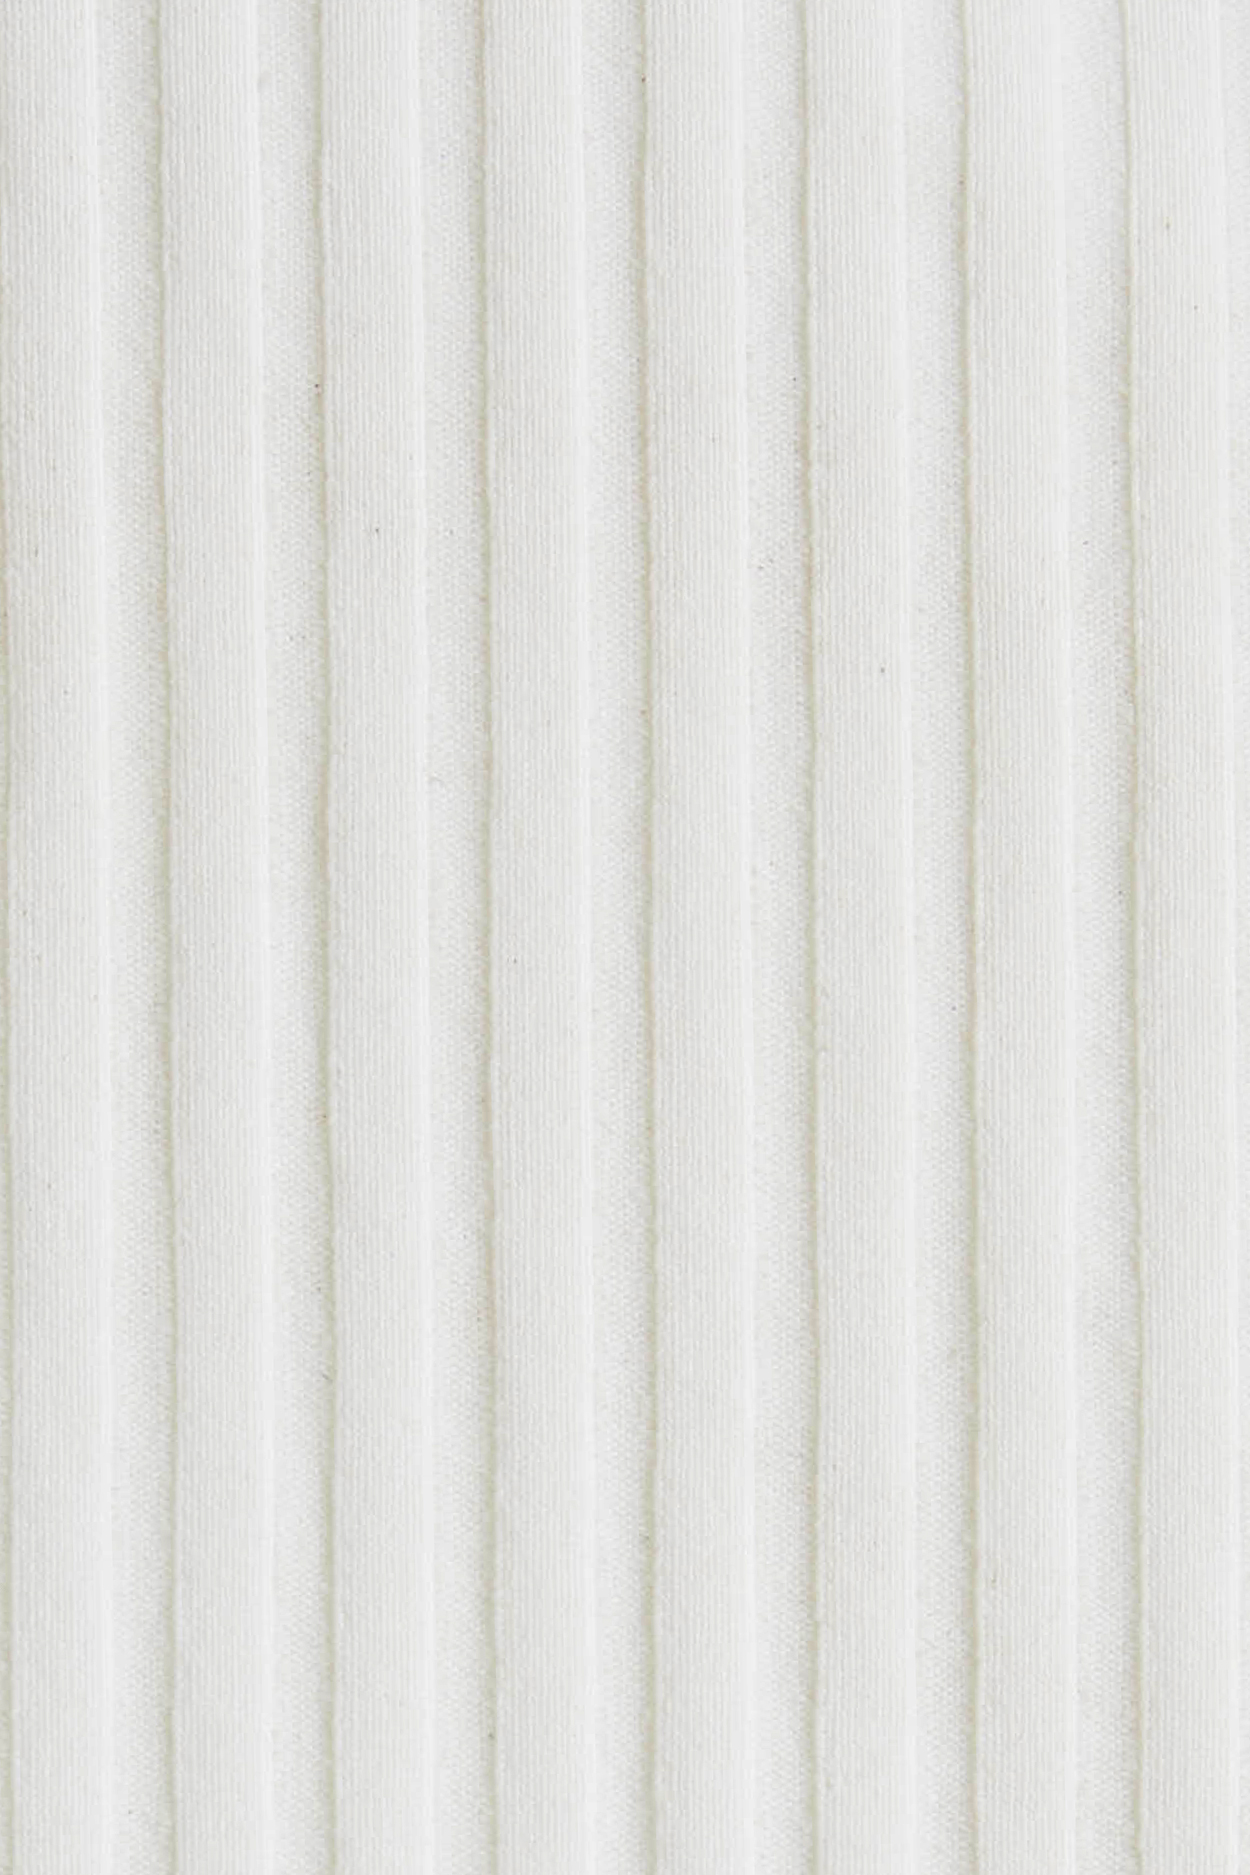 White EcoRib fabric swatch